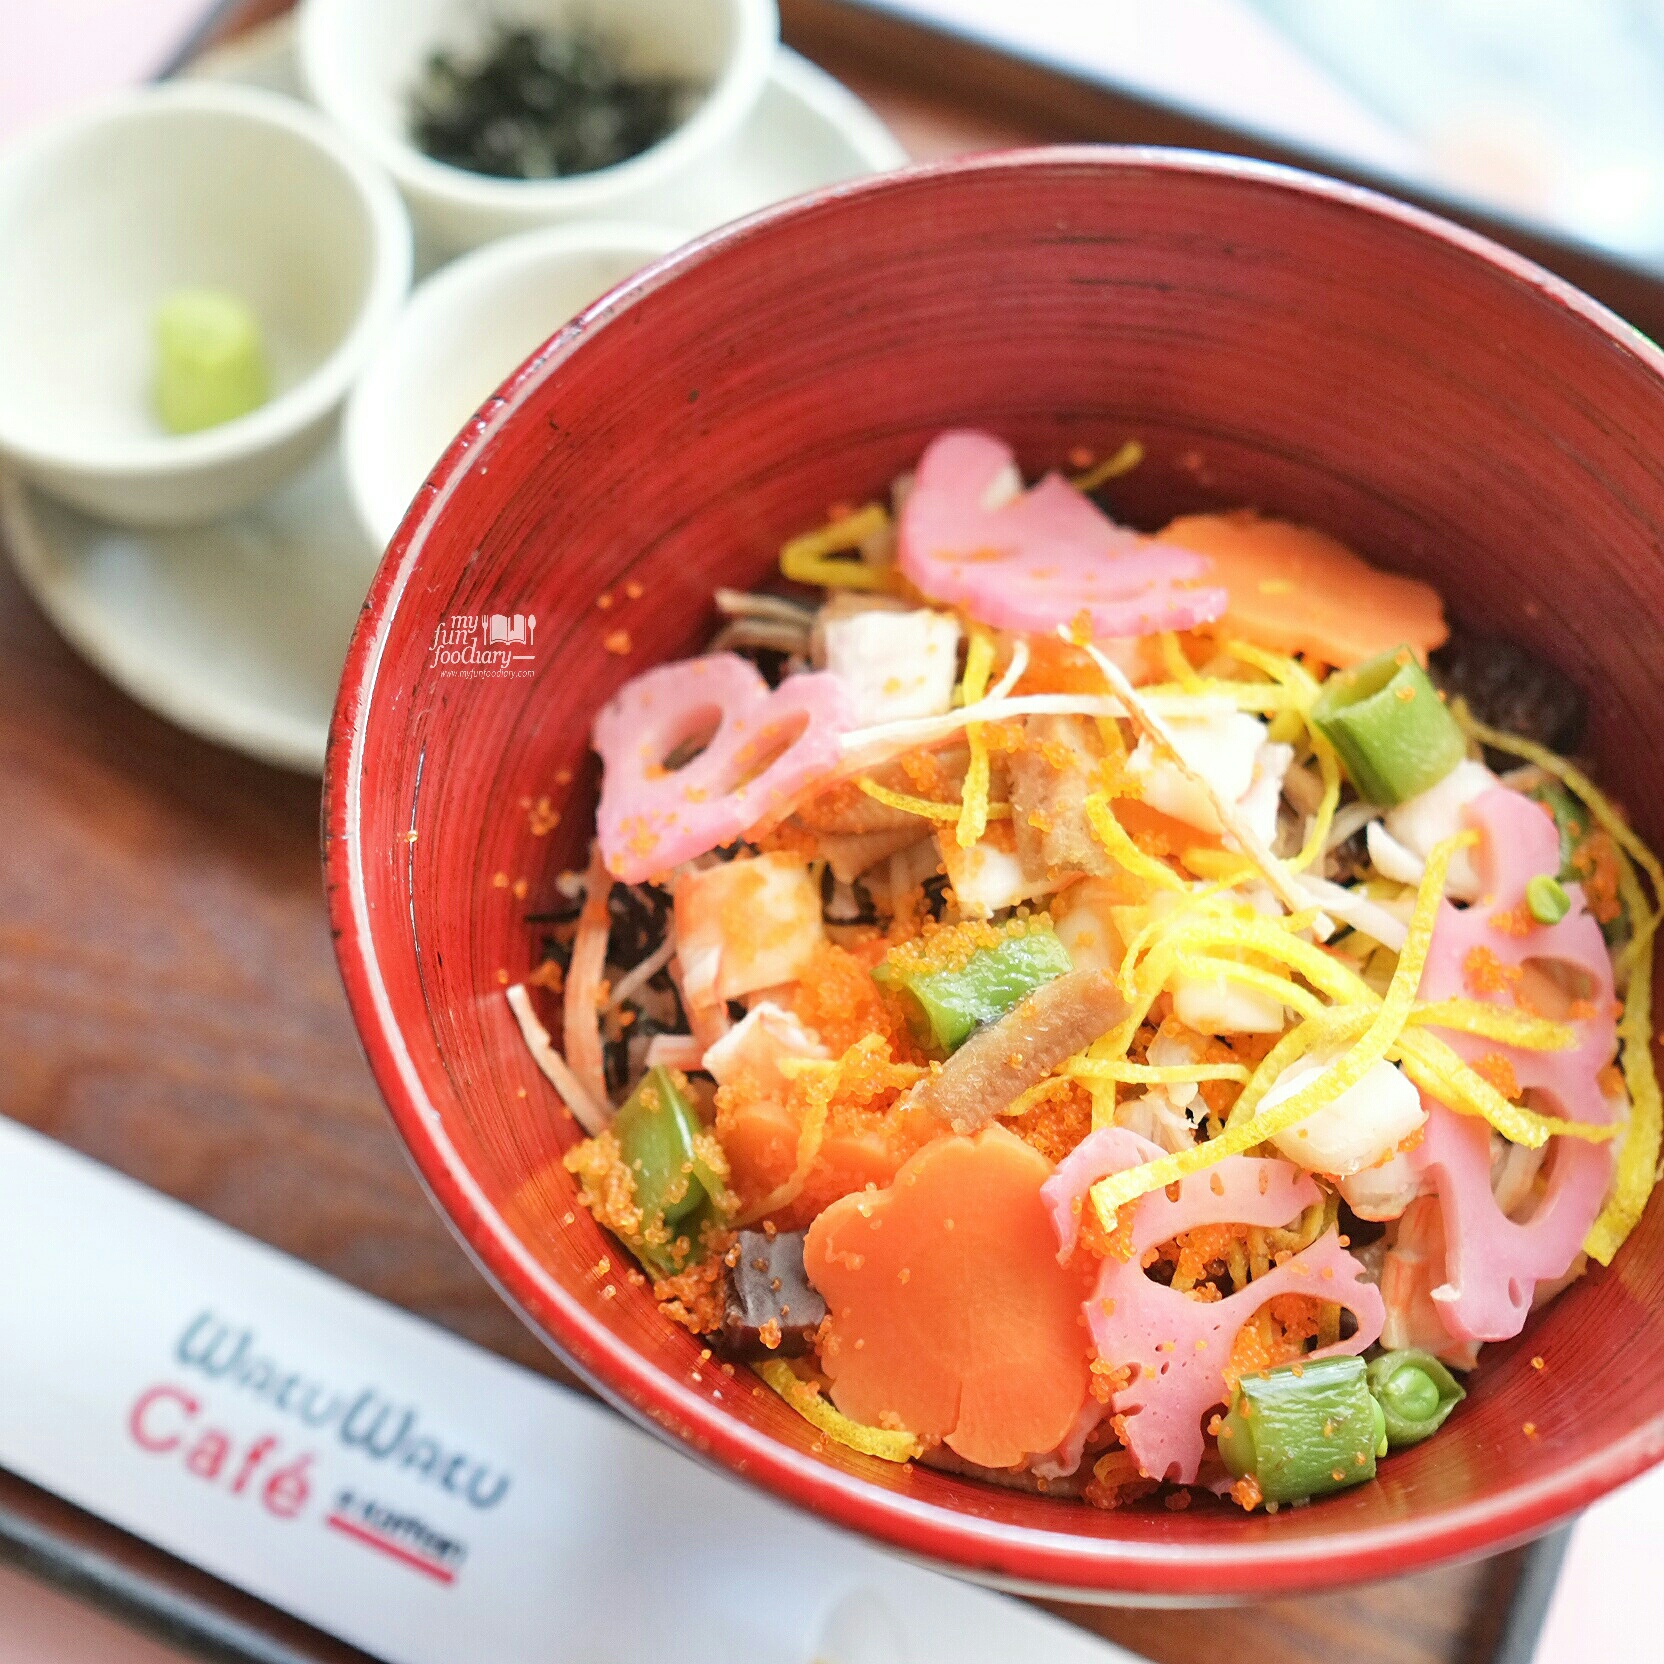 Chirashi Sushi at Wakuwaku Cafe Japan by Myfunfoodiary 03